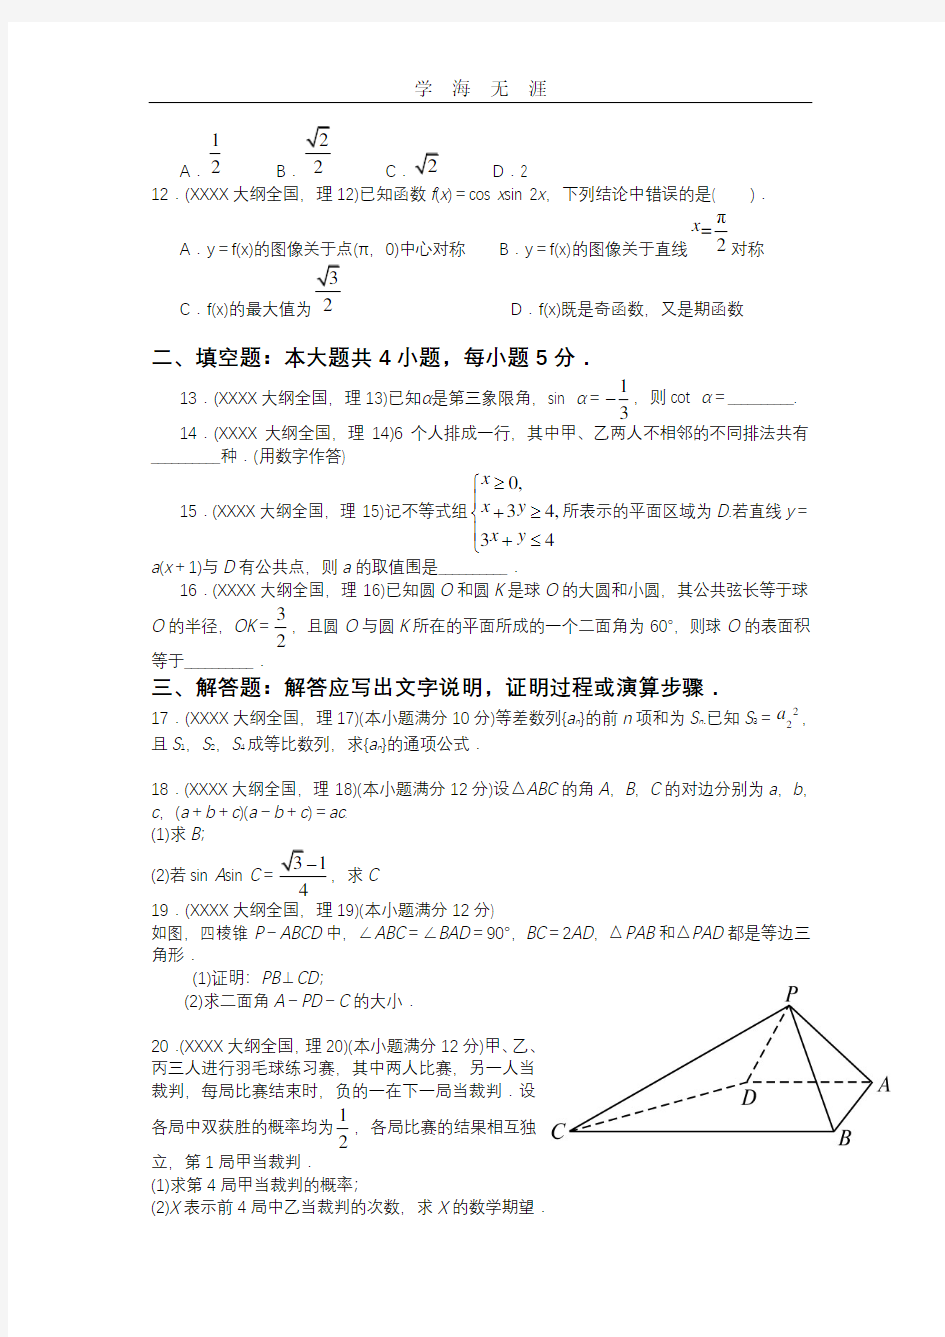 历年高考数学真题(全国卷).pdf